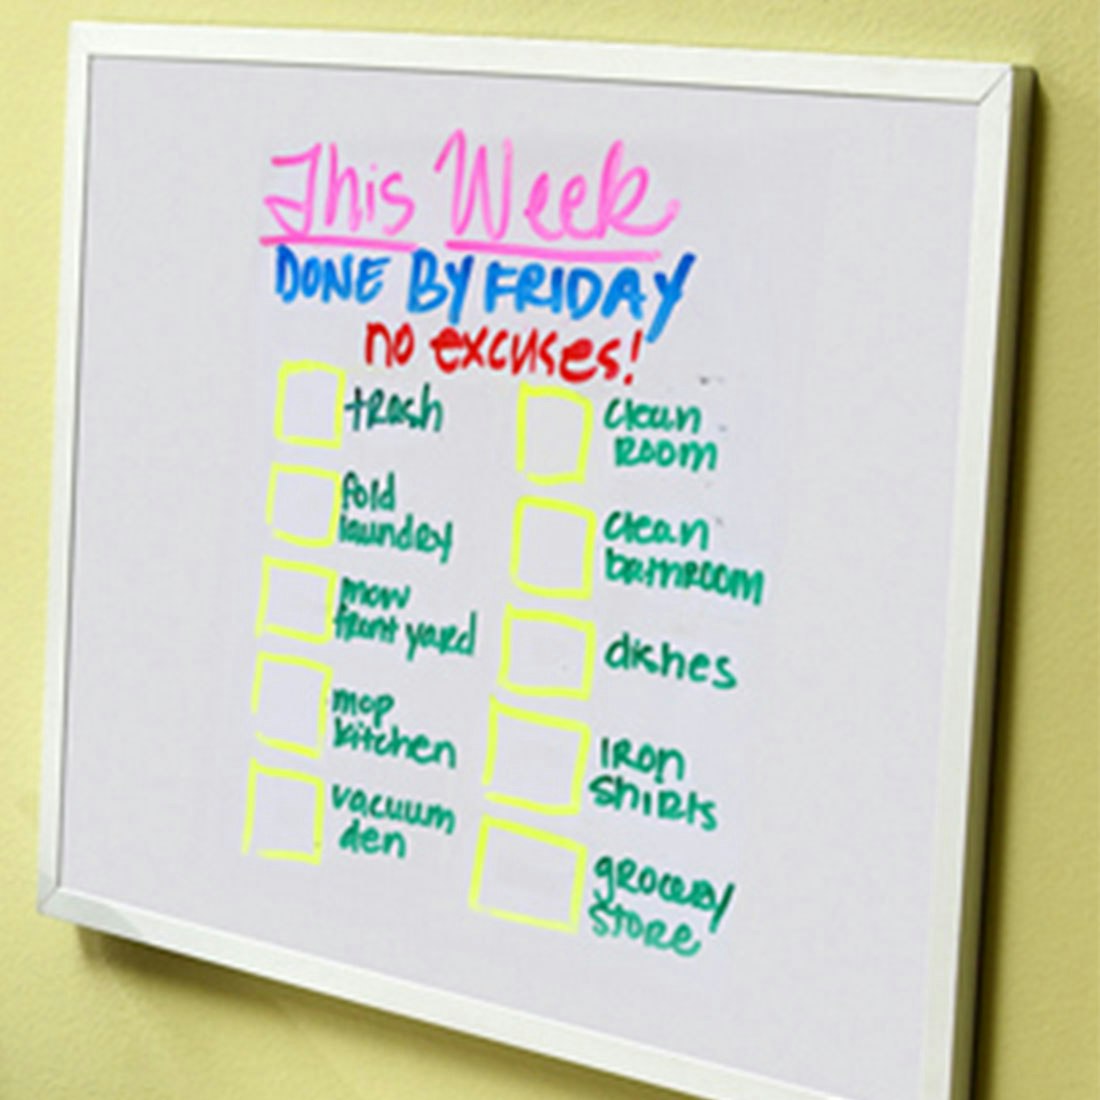 weekly-chore-list-written-on-whiteboard.jpg